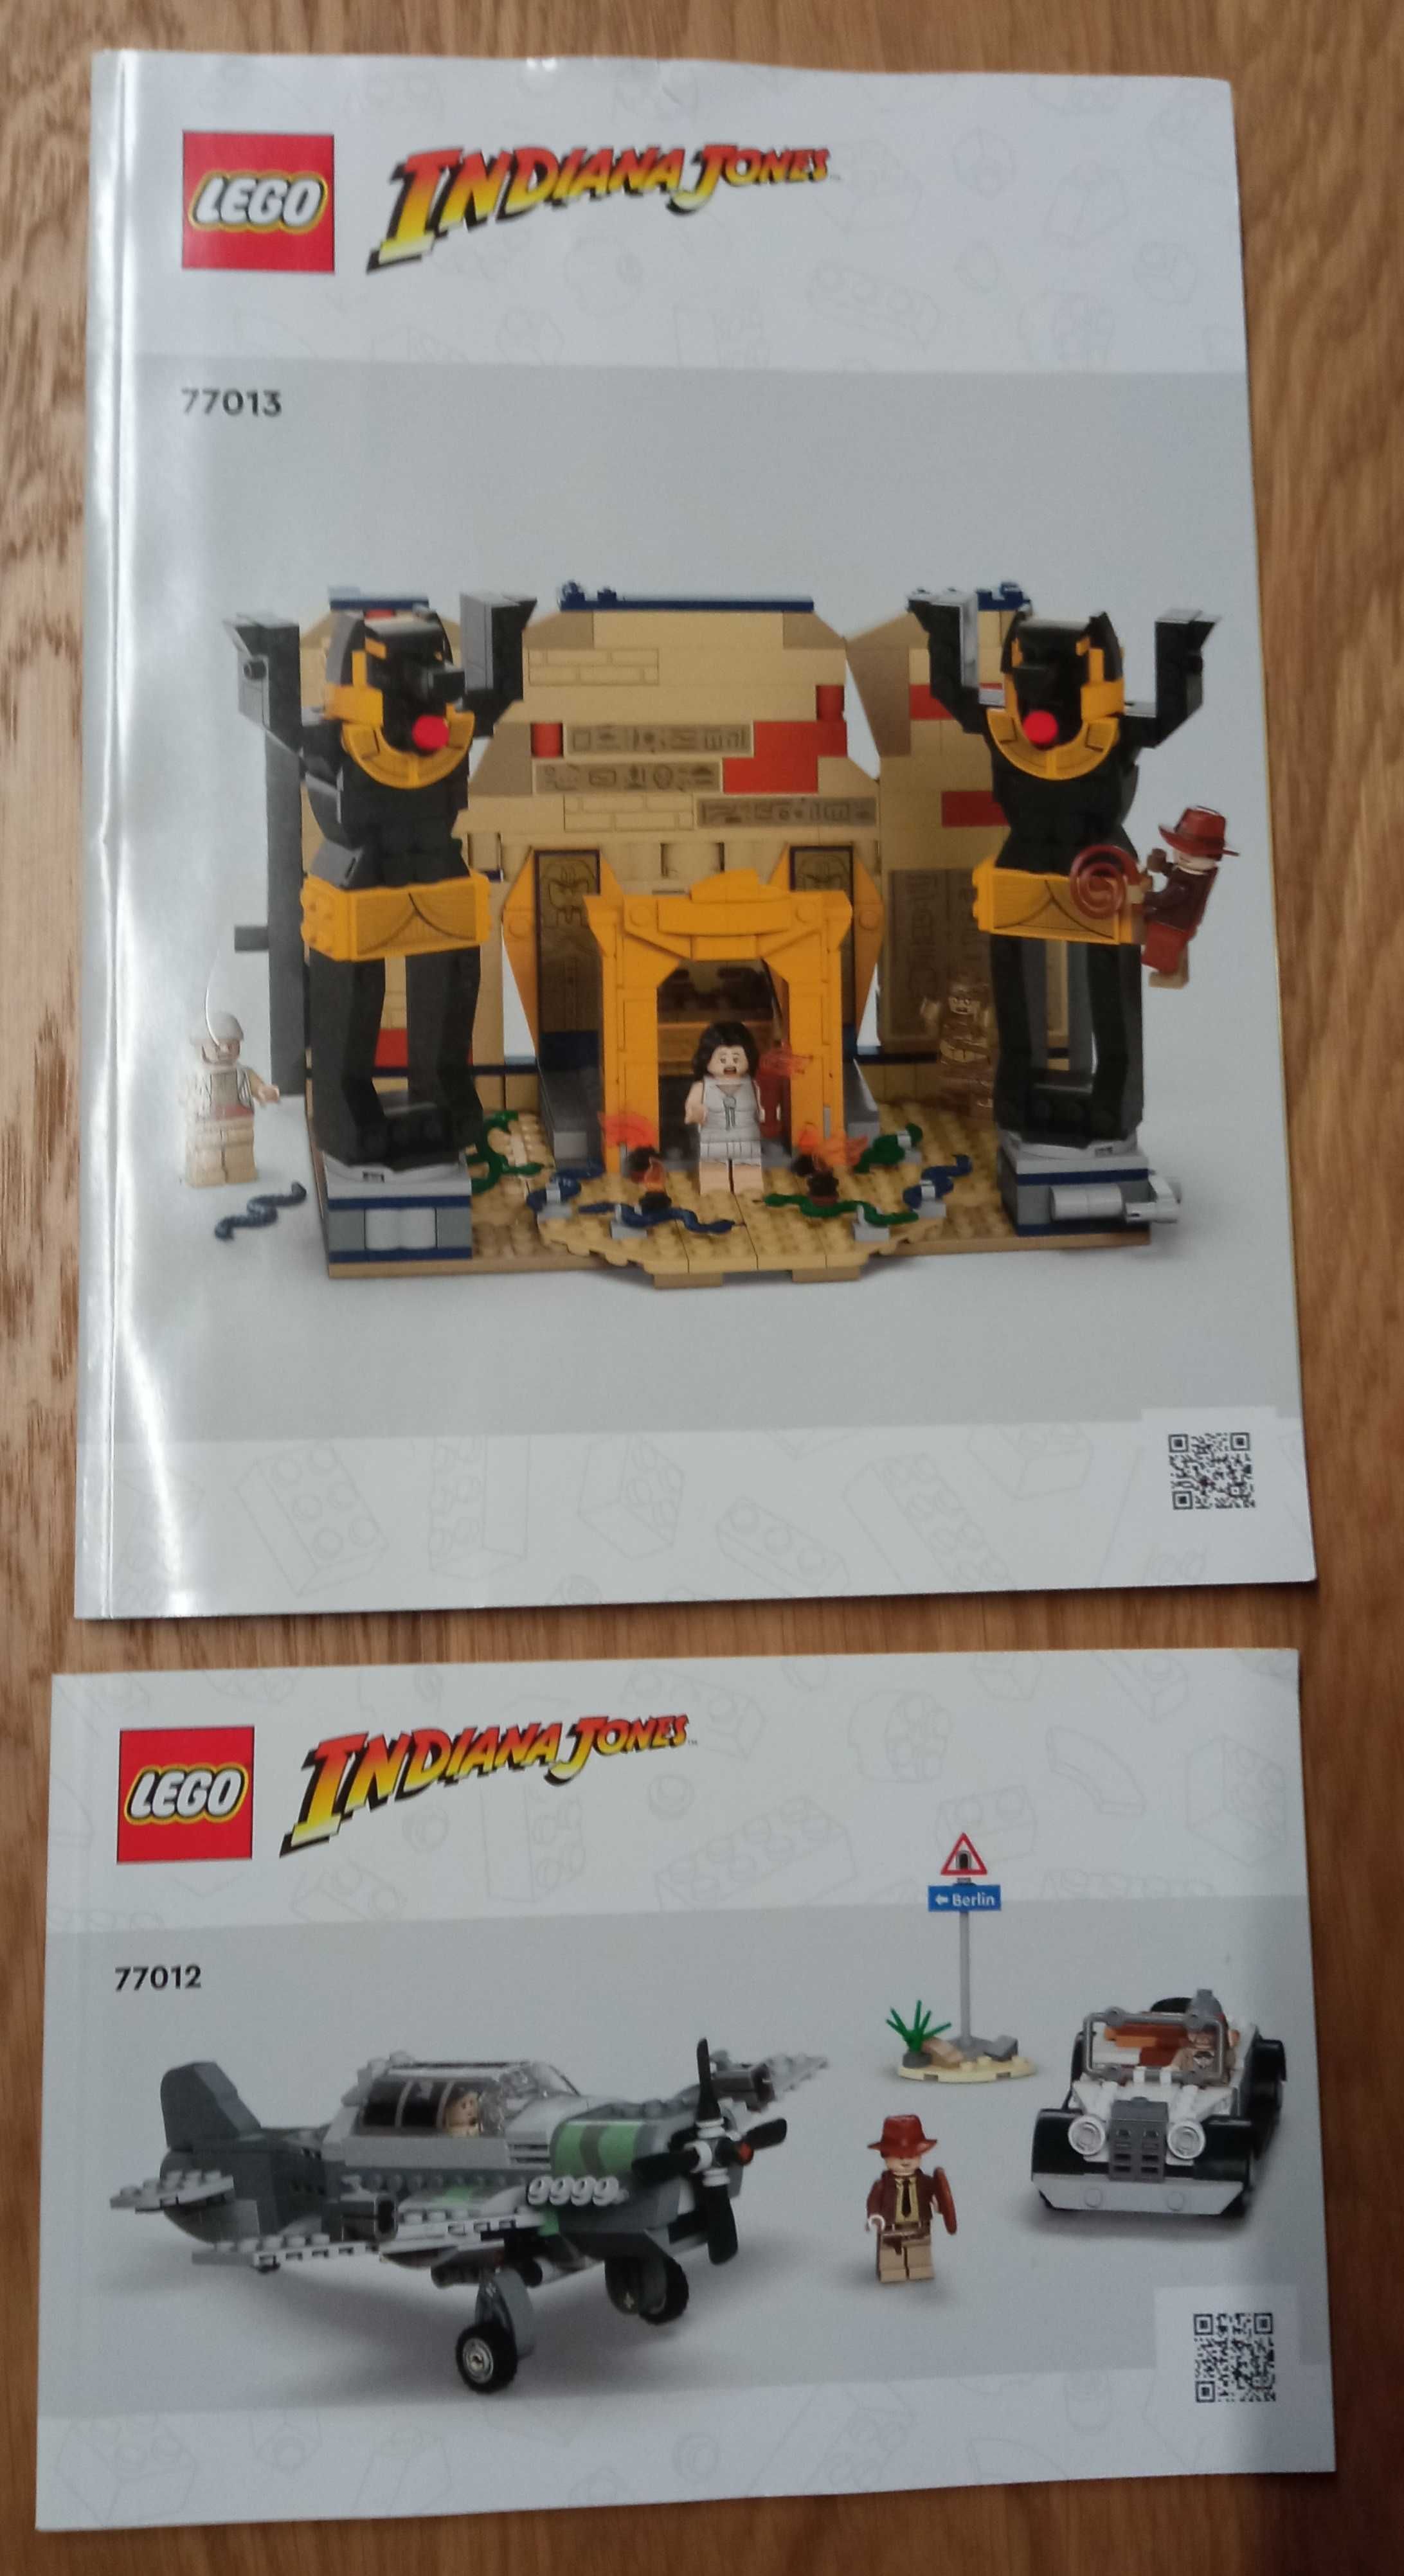 Instrukcje Lego Indiana Jones:  77013, 77012